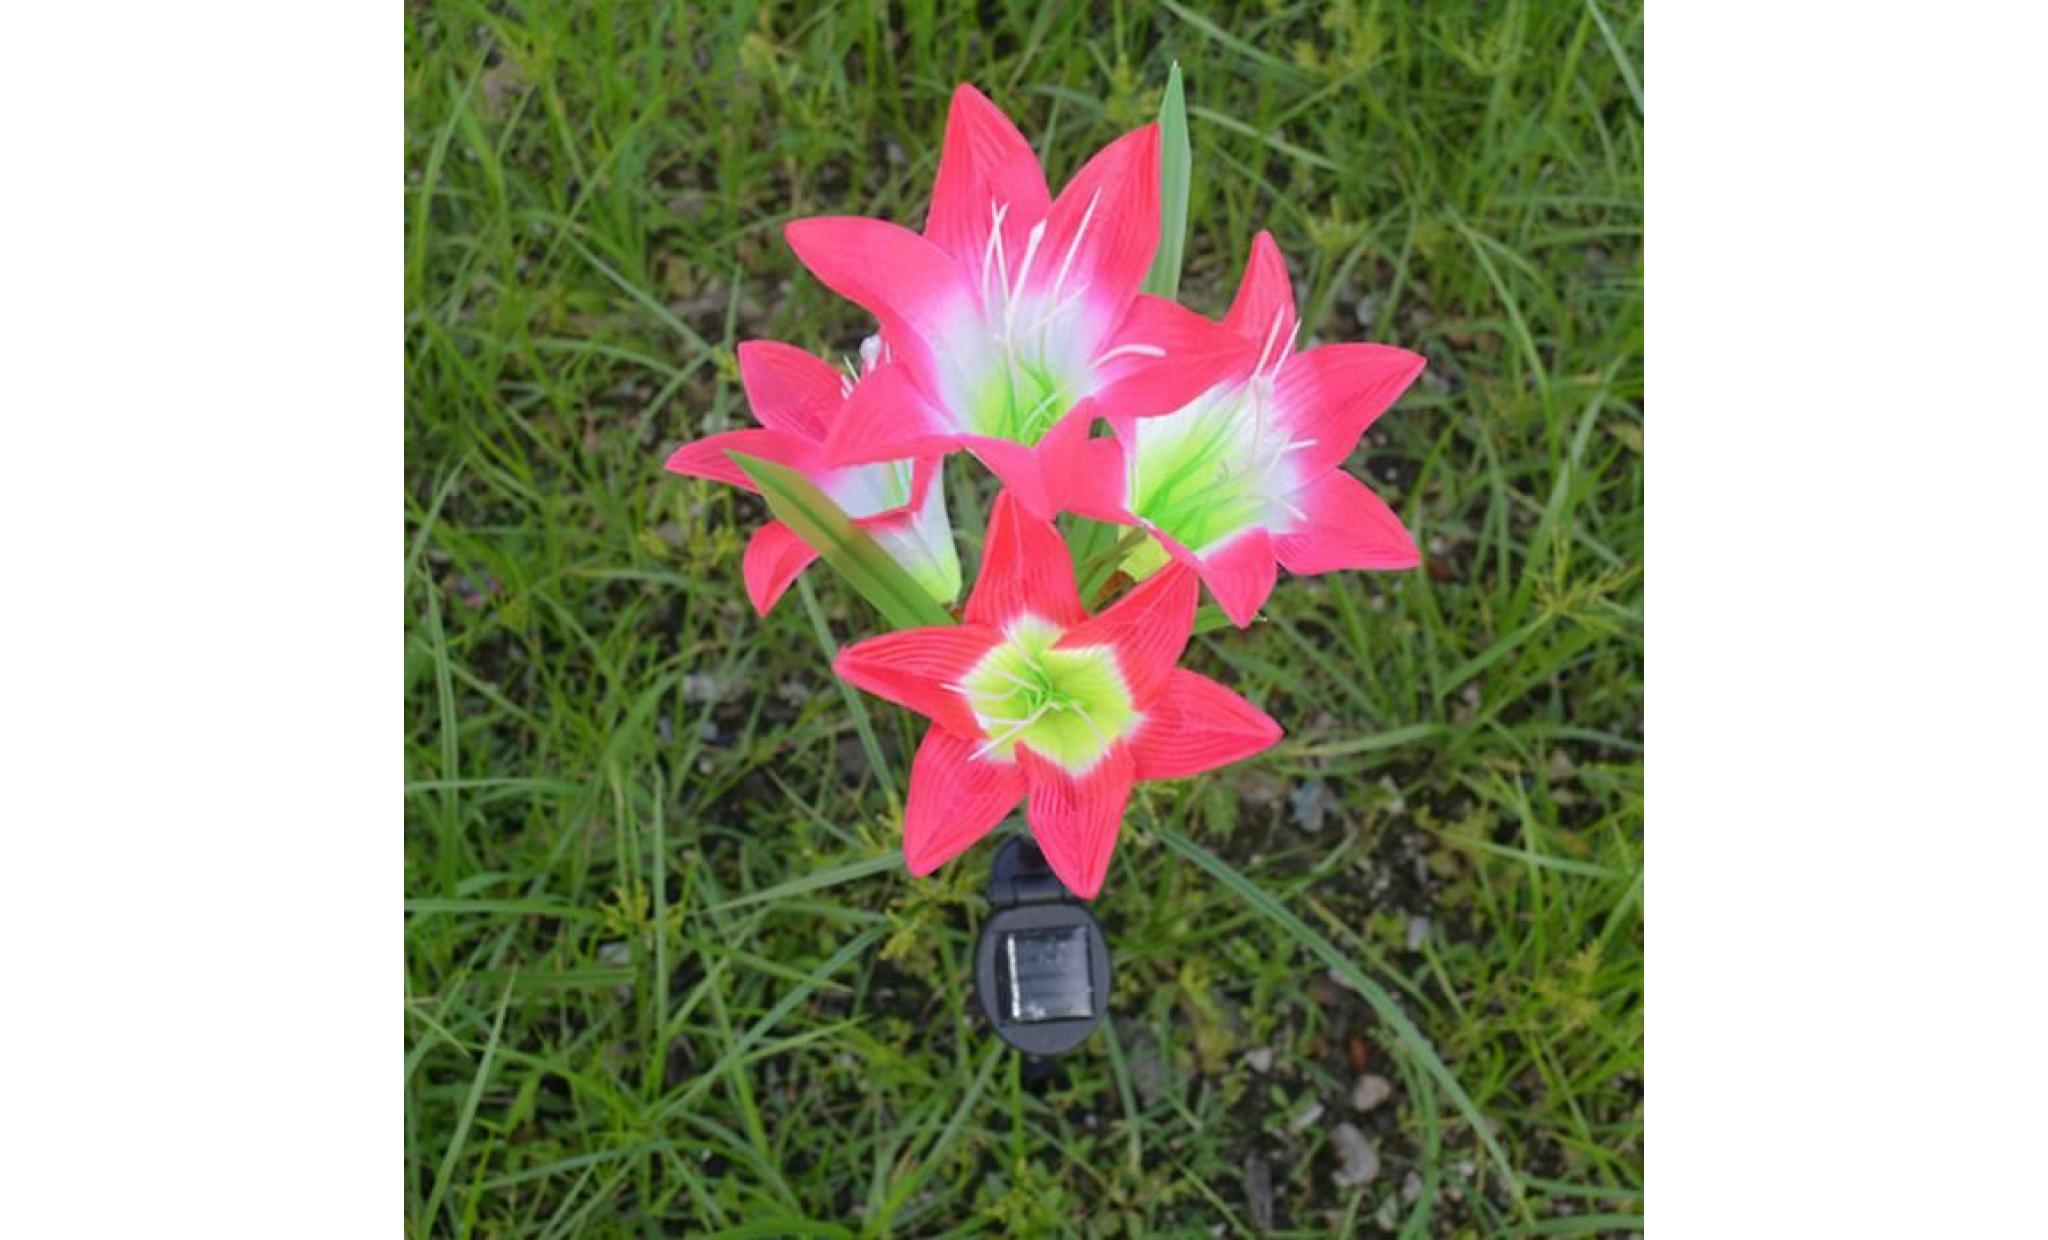 borne solaire 2 pcs fleur de lys jardin solaire actionné pieu lumières lumières fleurs artificielles led lumière #la 132 pas cher